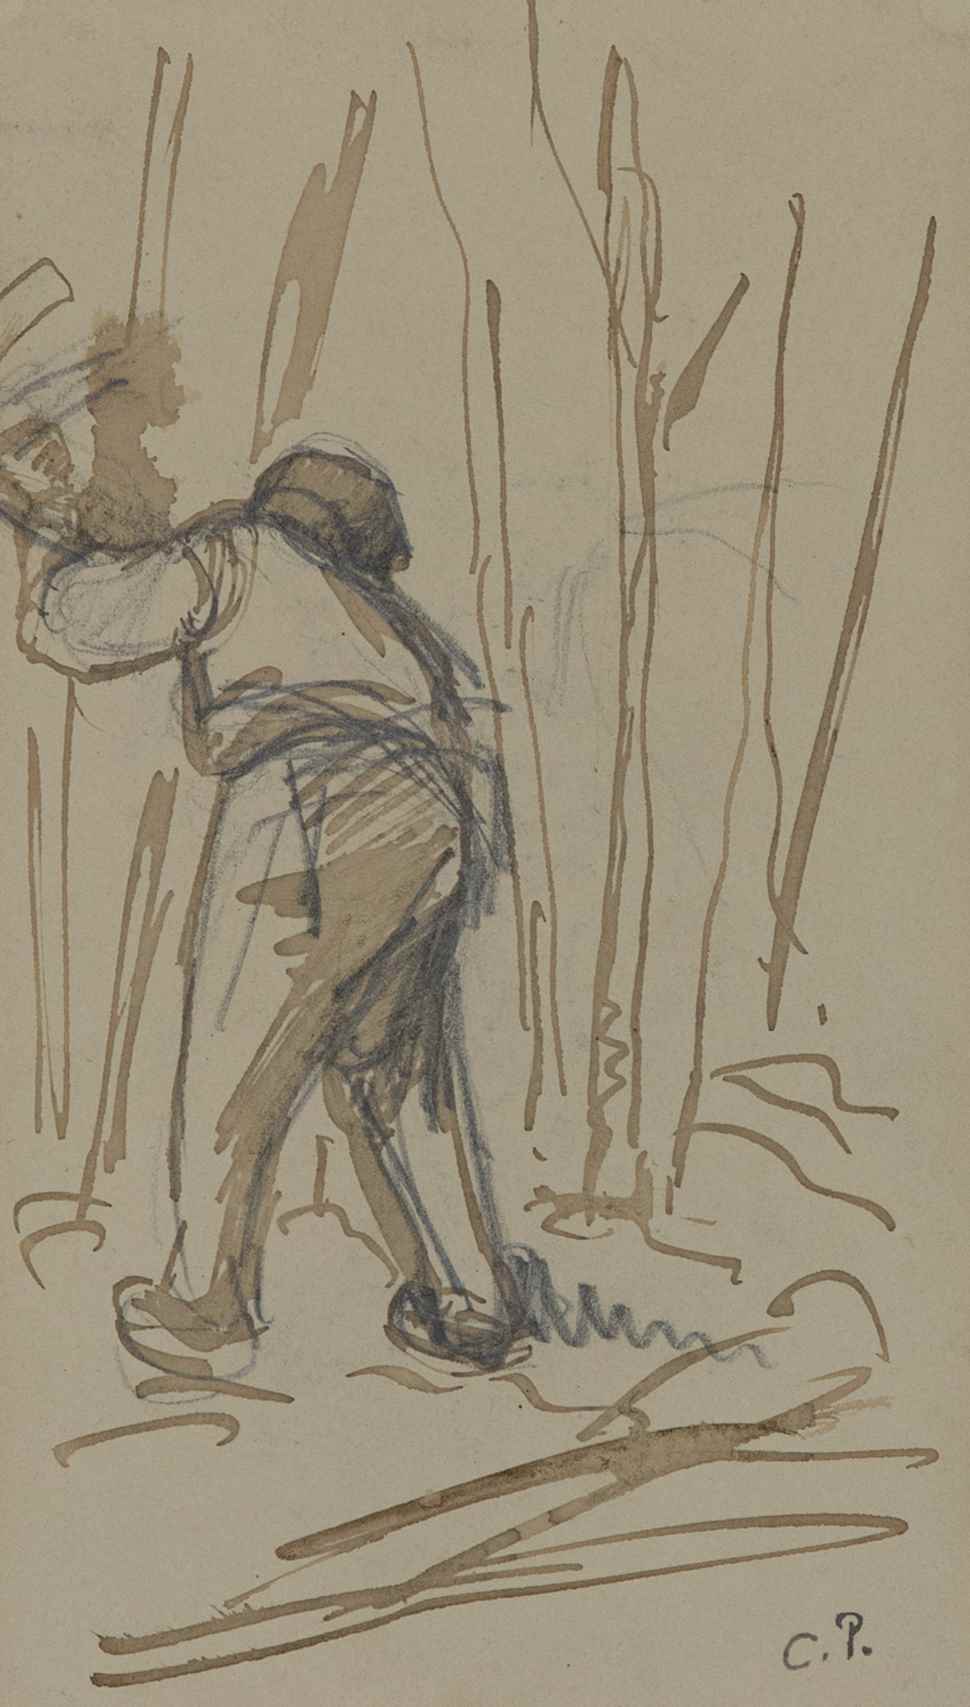 Paysan de dos - Camille Pissarro (1830 - 1903)